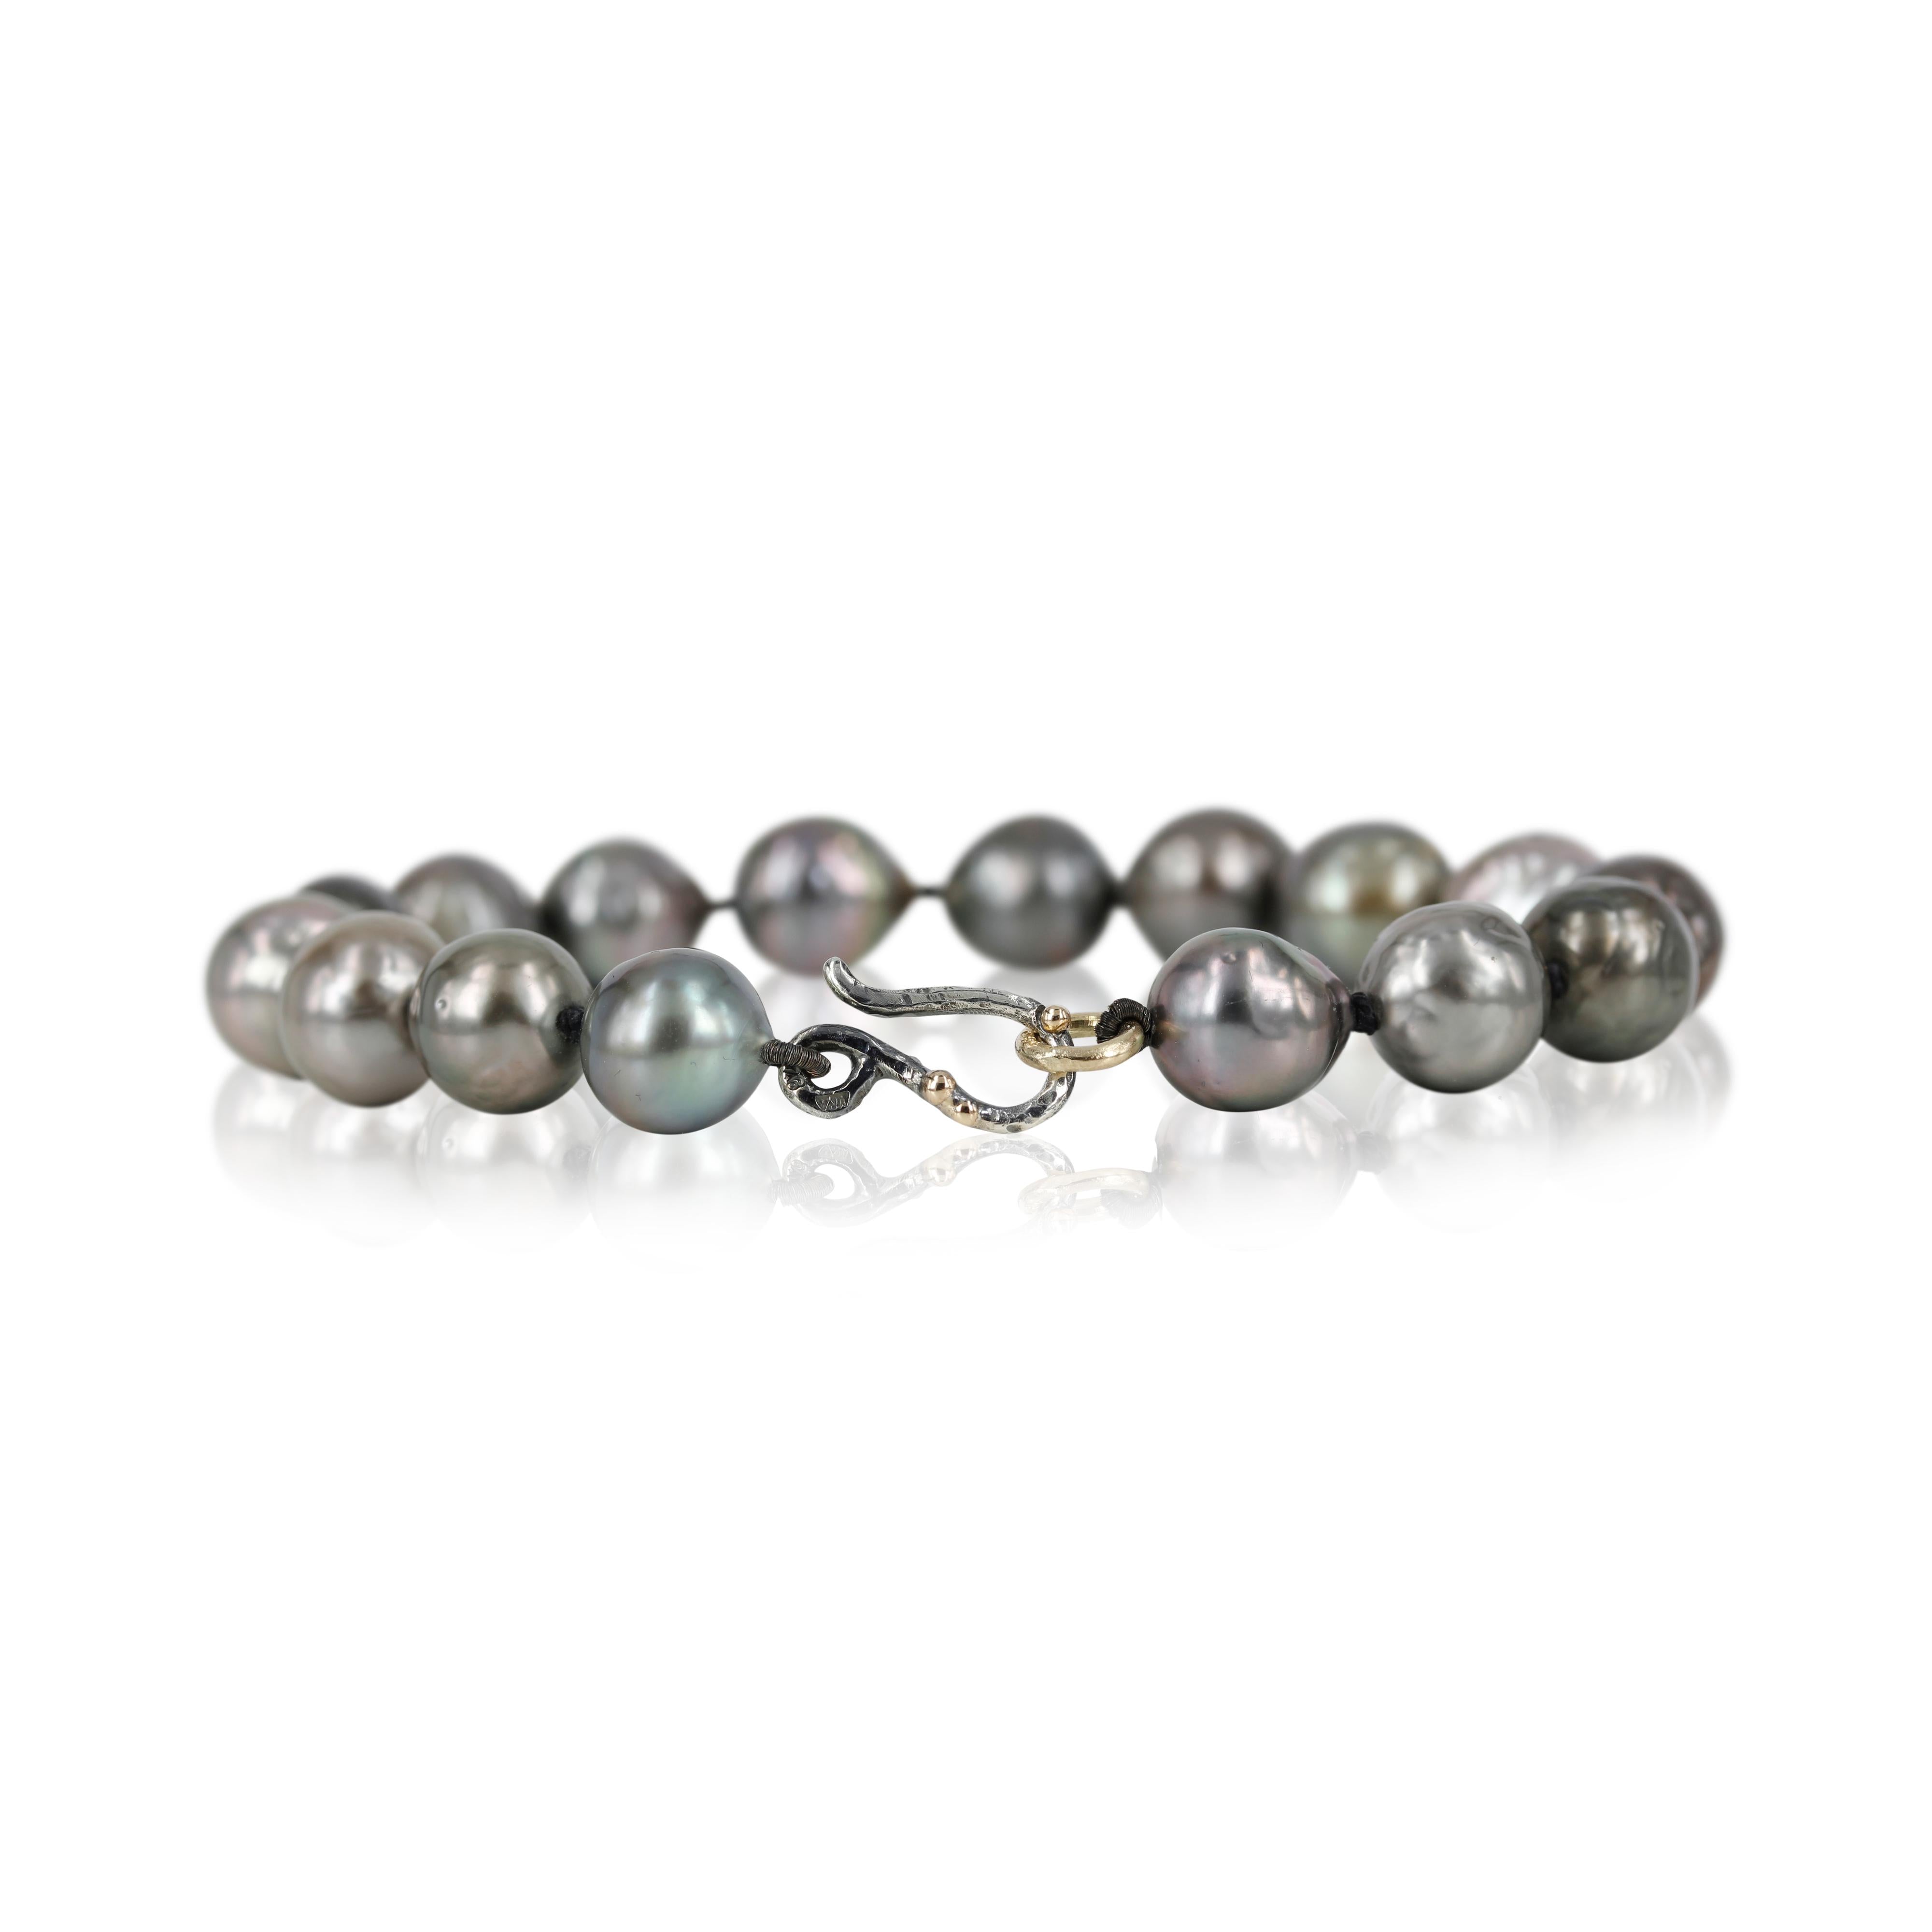 01-007 - Perle armbånd med tahitiperler  Smukt armbånd af tahitiperler, perlerne måler 9-9½ mm. de har smuk perlemorsglans og skifter i farvespil fra mørk grå til helt lys grå.